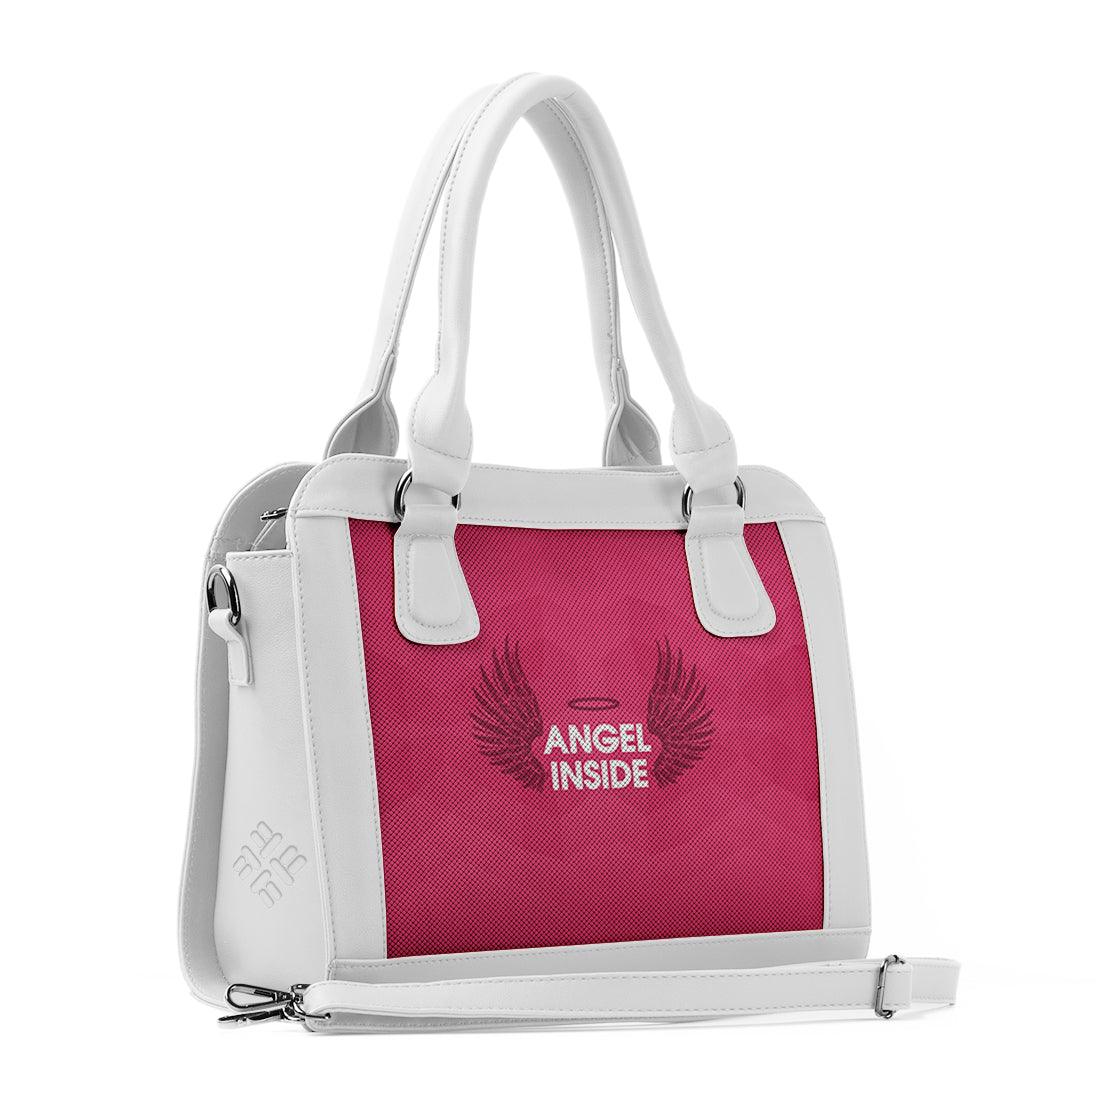 White Travel Hobo Bag Angel Inside - CANVAEGYPT